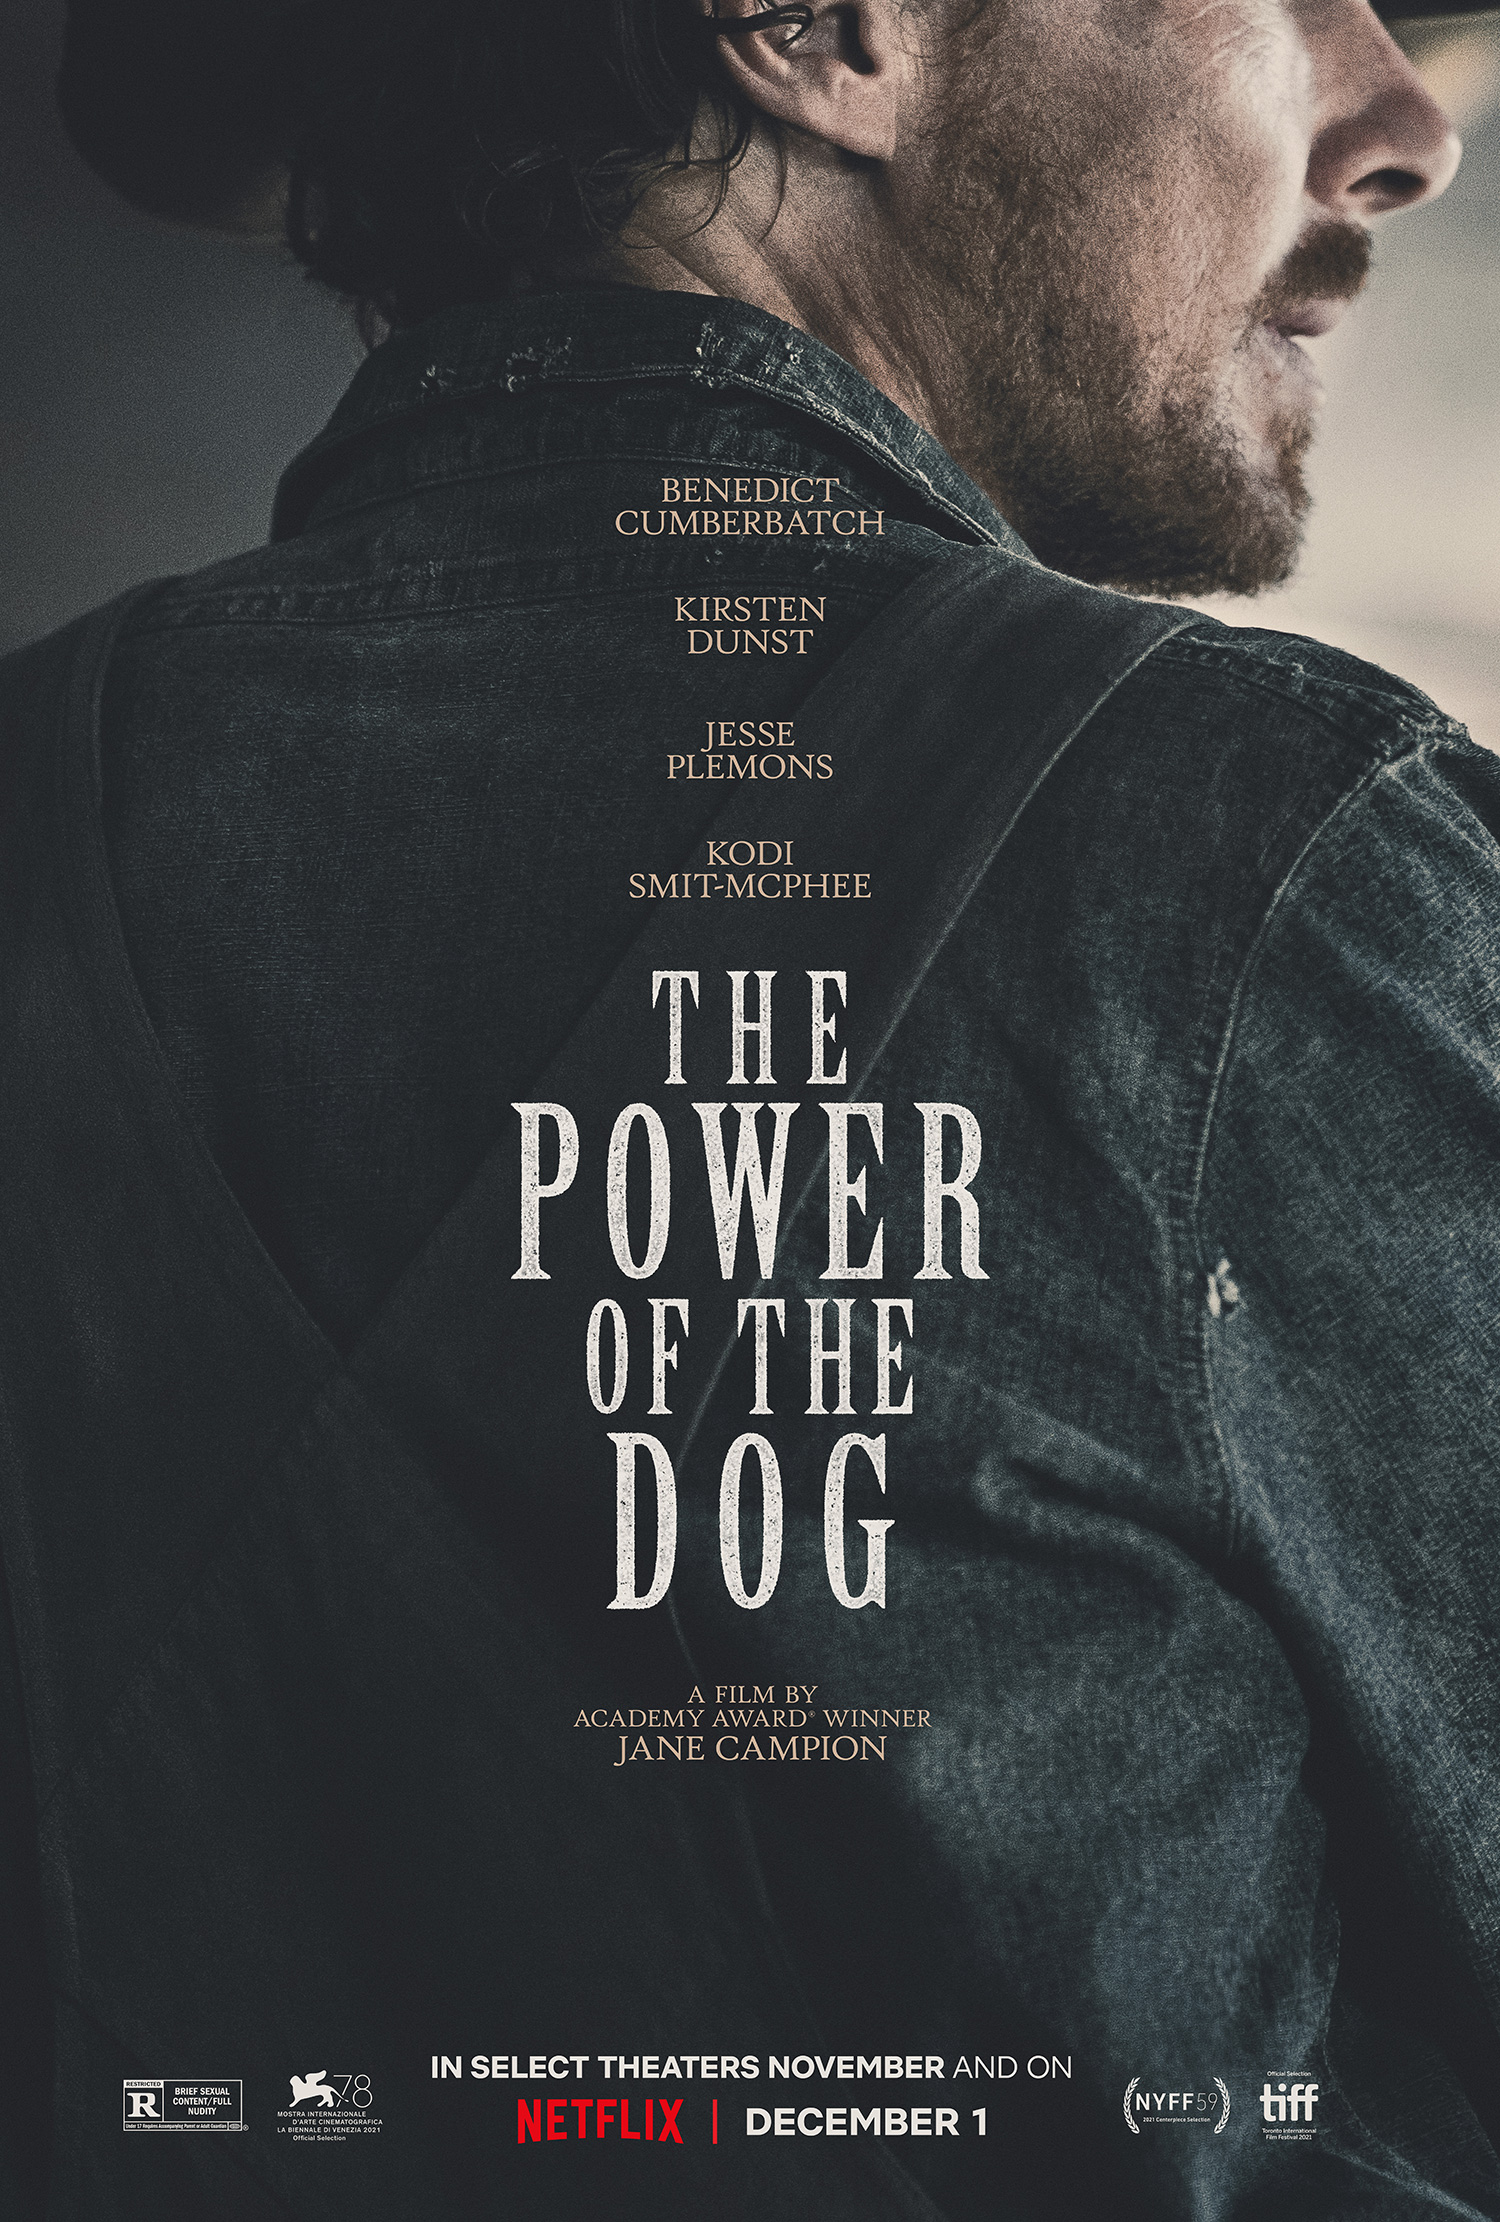 베니스 영화제 은사자상 감독상 수상작인 제인 캠피온 감독의 <The Power of the Dog> 포스터. 하단에 11월 일부 극장에서 공개하며(제작국가 중 호주 기준) 12월 1일 넷플릭스에서 공개한다고 적혀있다. ⓒNetflix